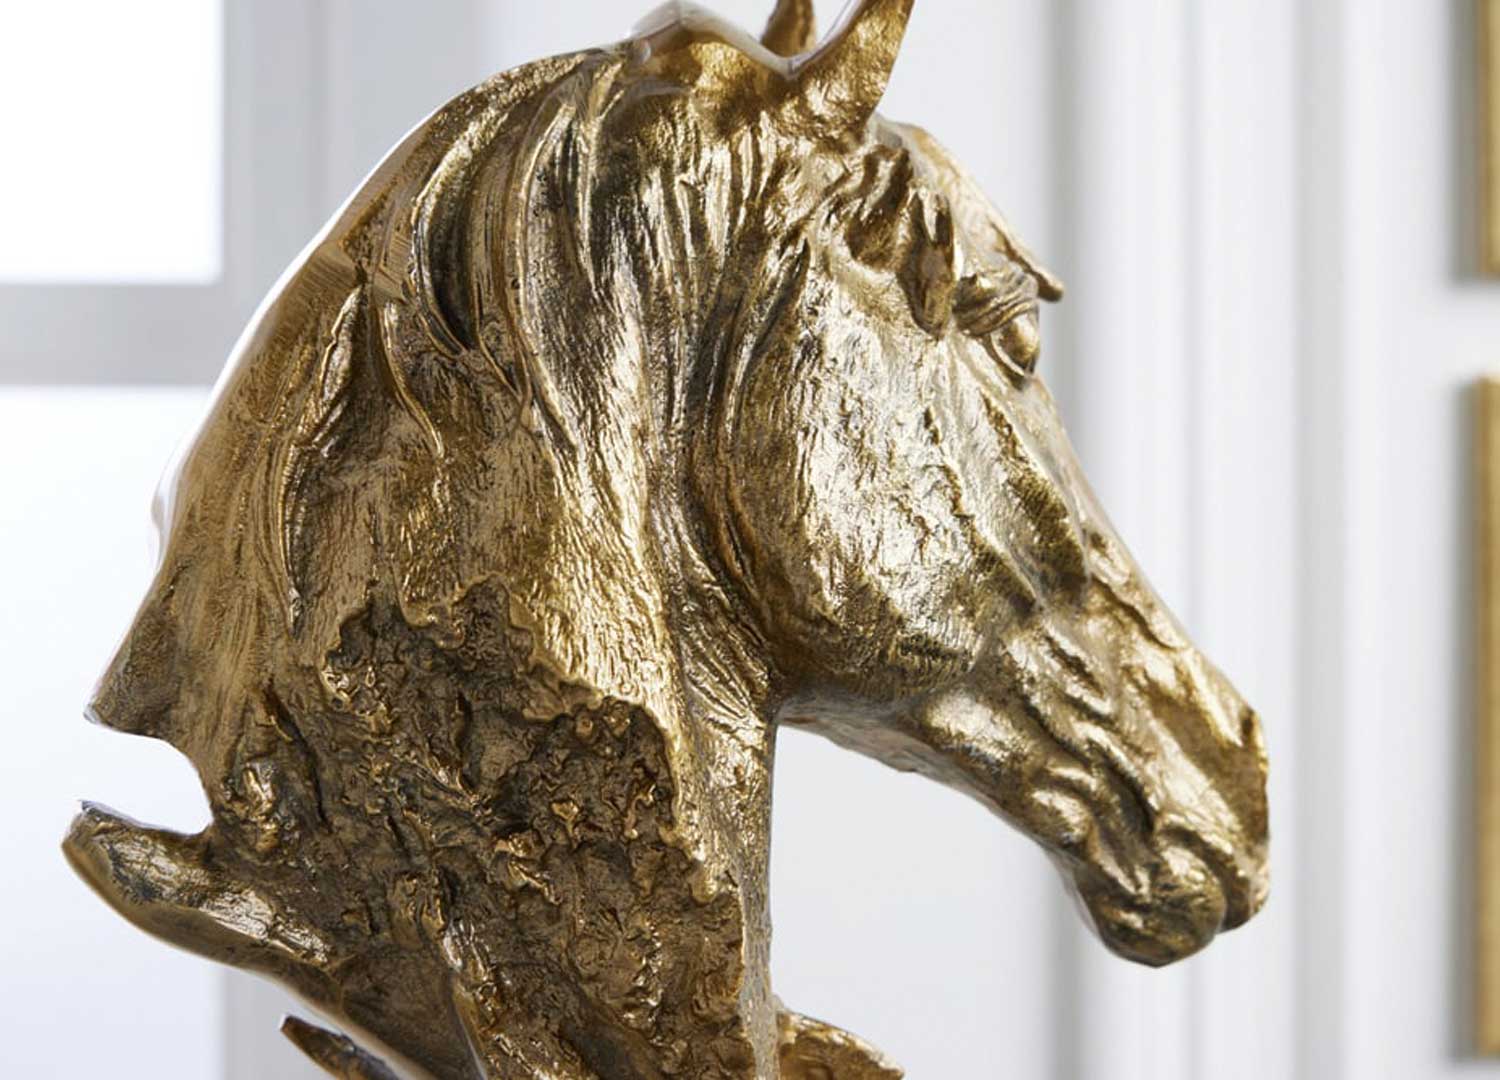 Arrière du buste de cheval décoratif